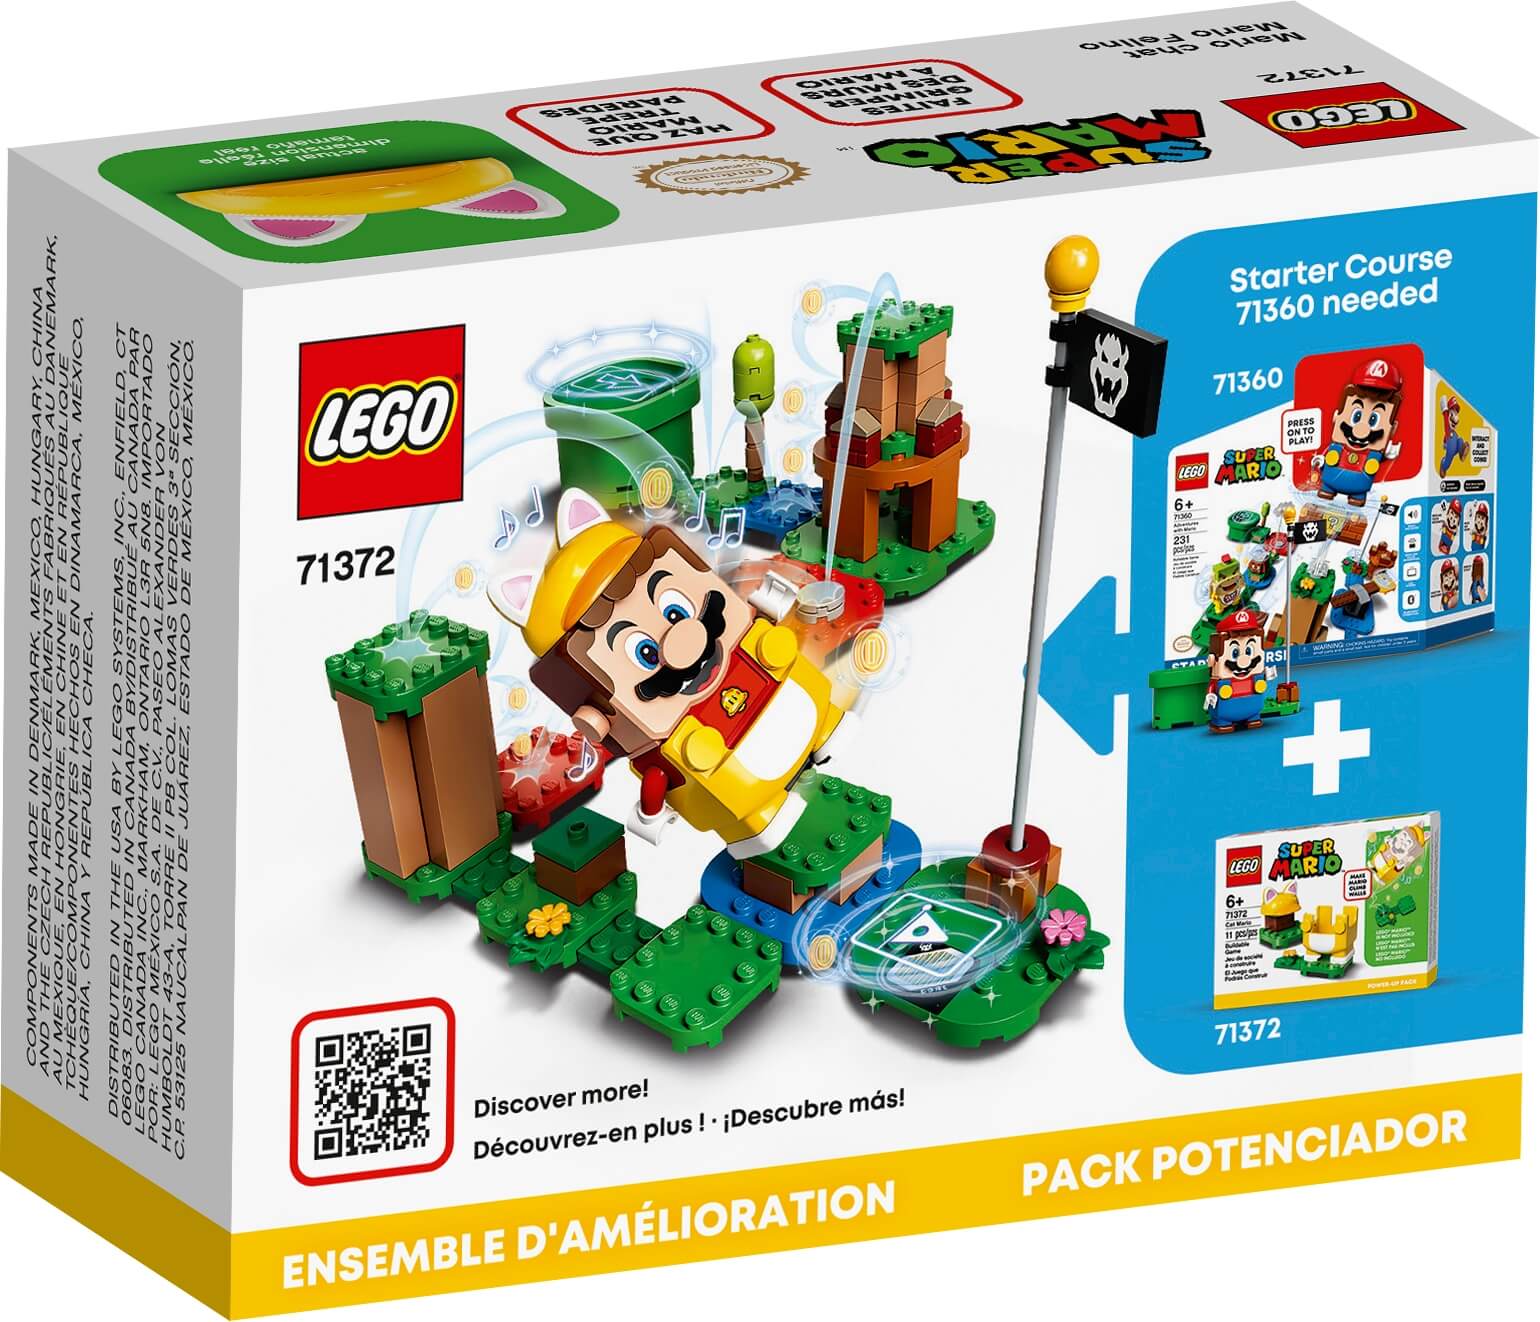 Pack Potenciador Mario Felino ( Lego 71372 ) imagen b